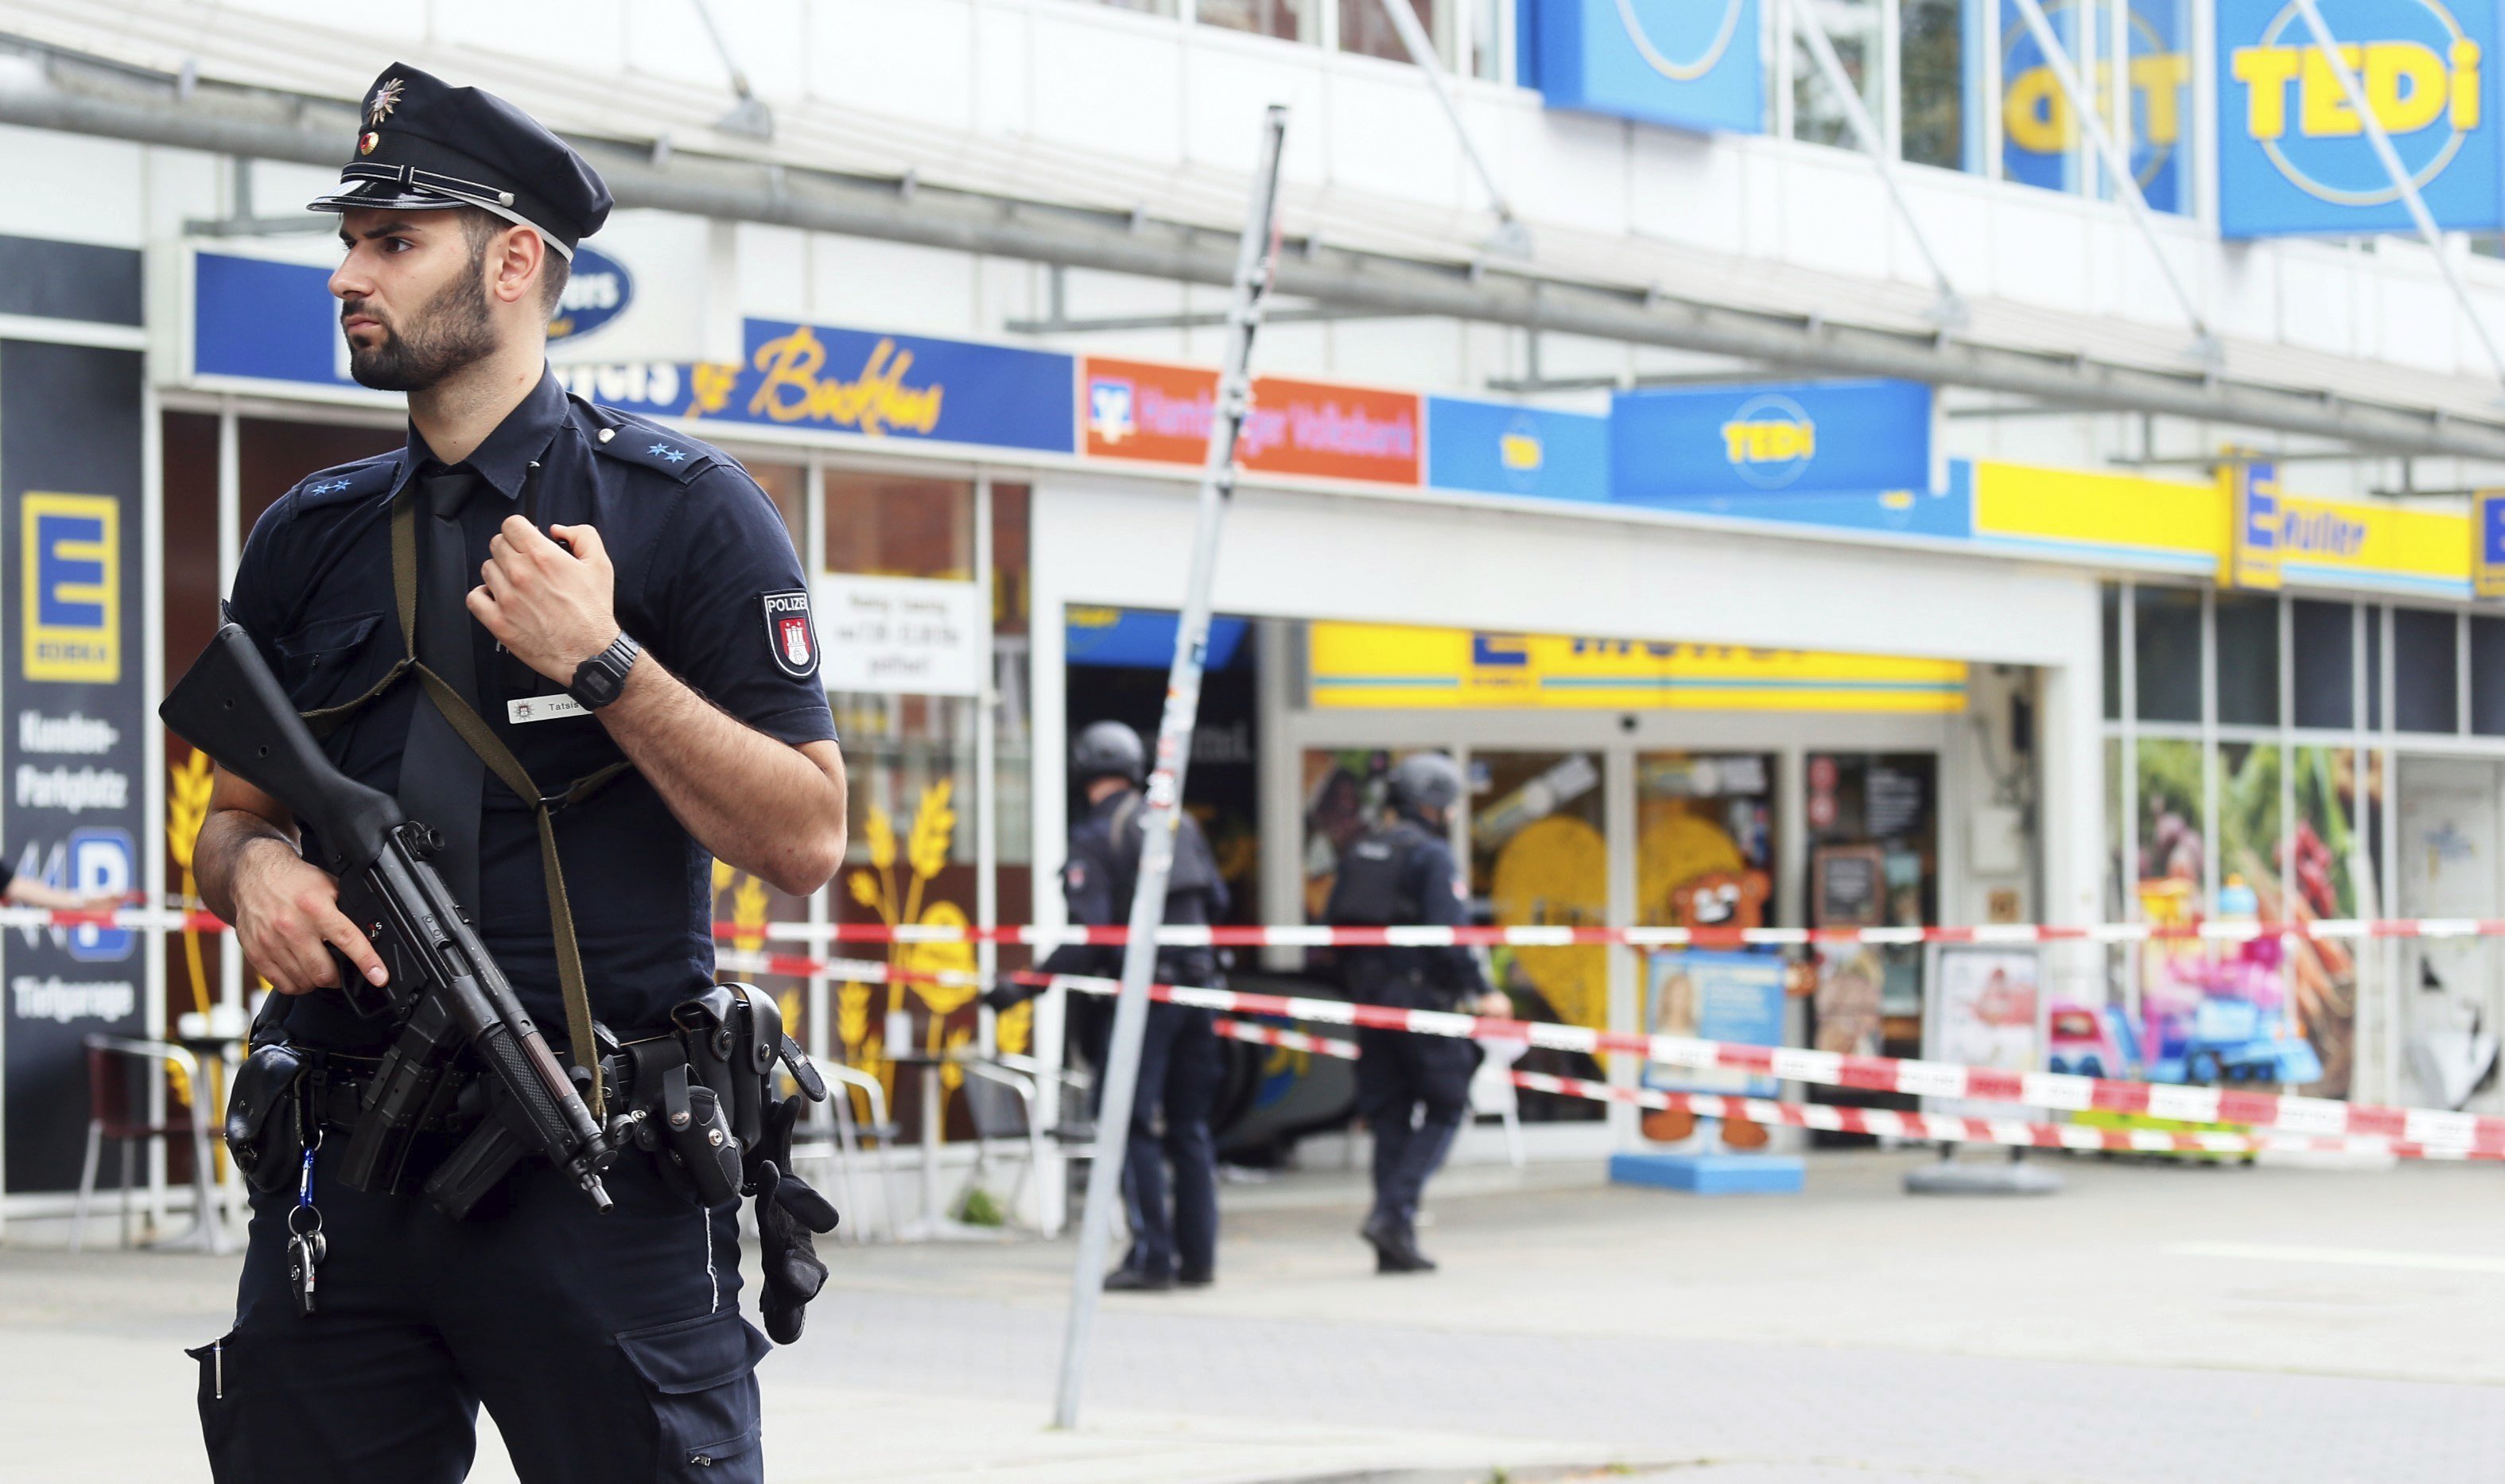 El atacante del supermercado de Hamburgo era un "islamista con problemas psicológicos"